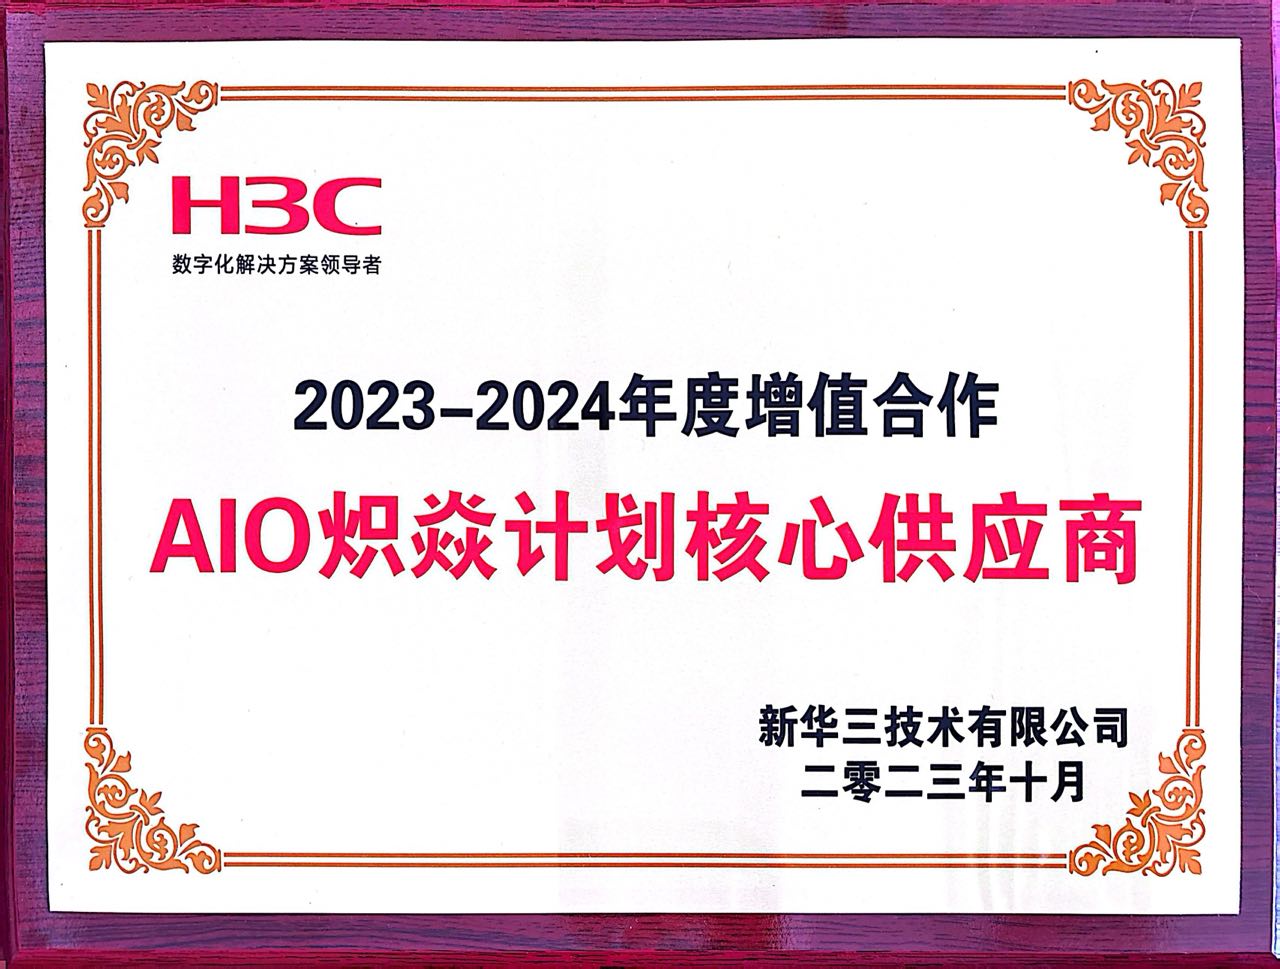 AIO-H3C炽焱计划核心供应商